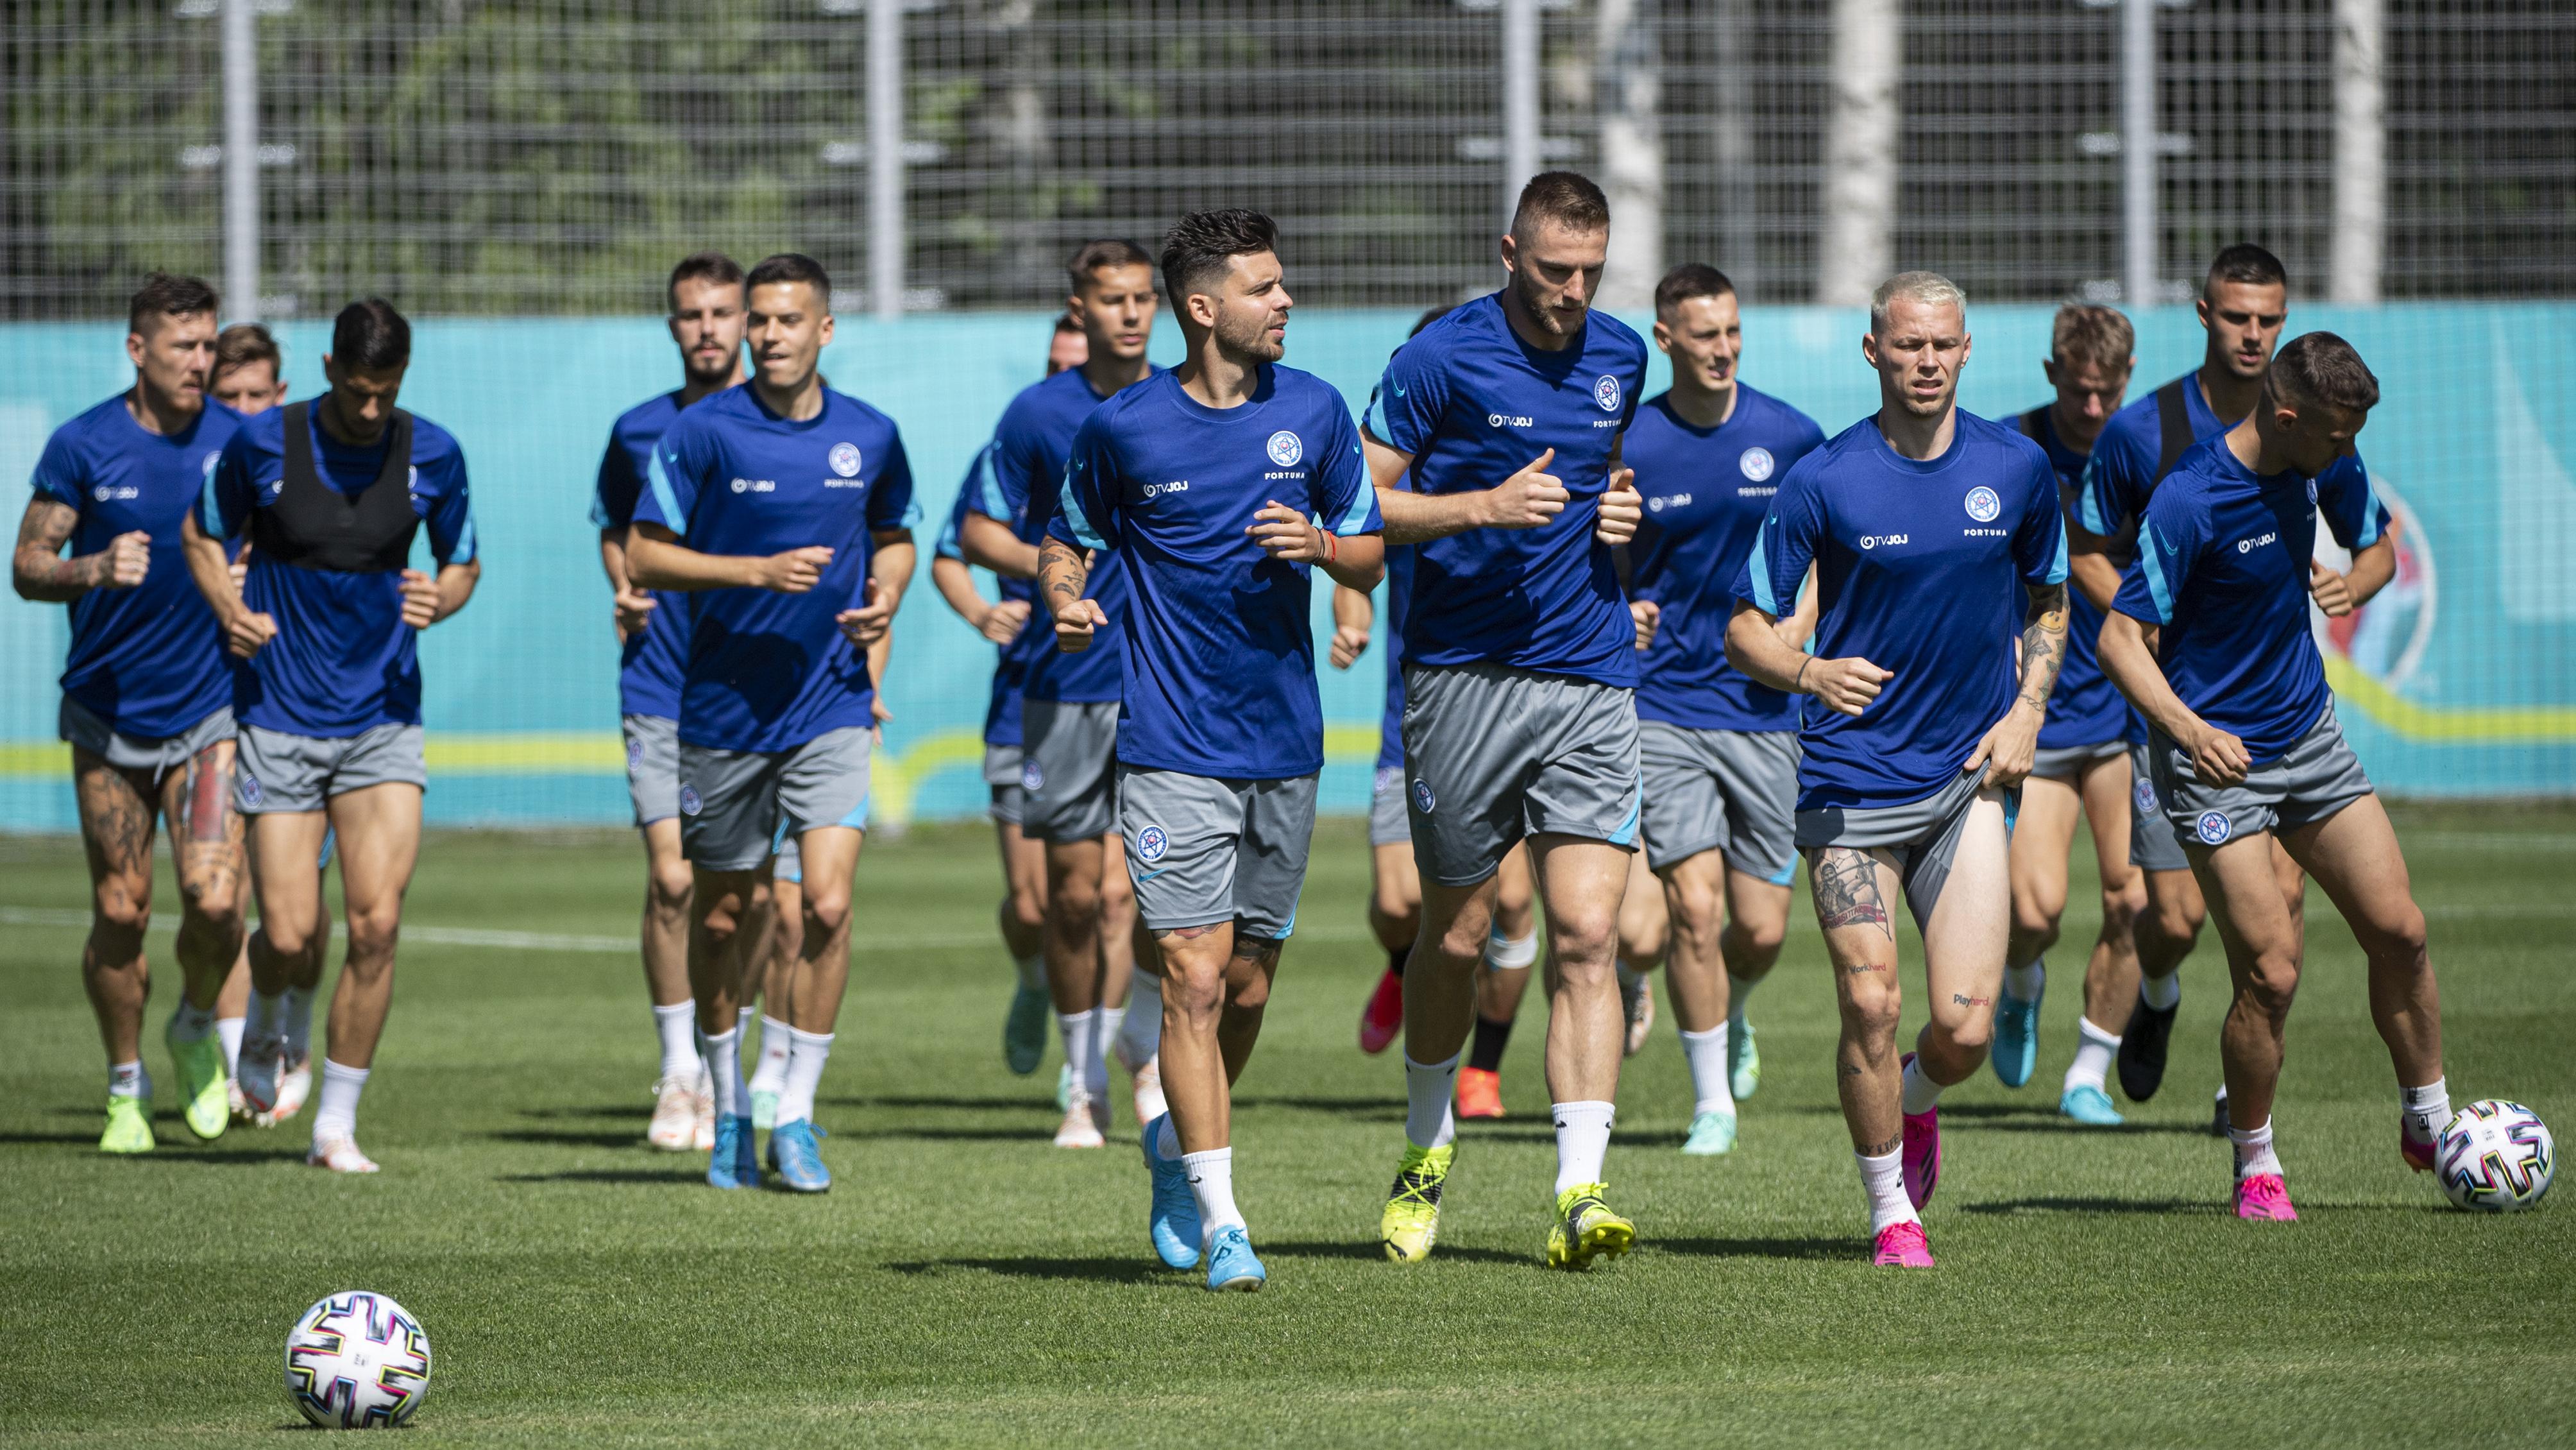 Futbal - Slovensko - zápasy dnes na EURO 2020 / 2021 (program) | Šport.sk